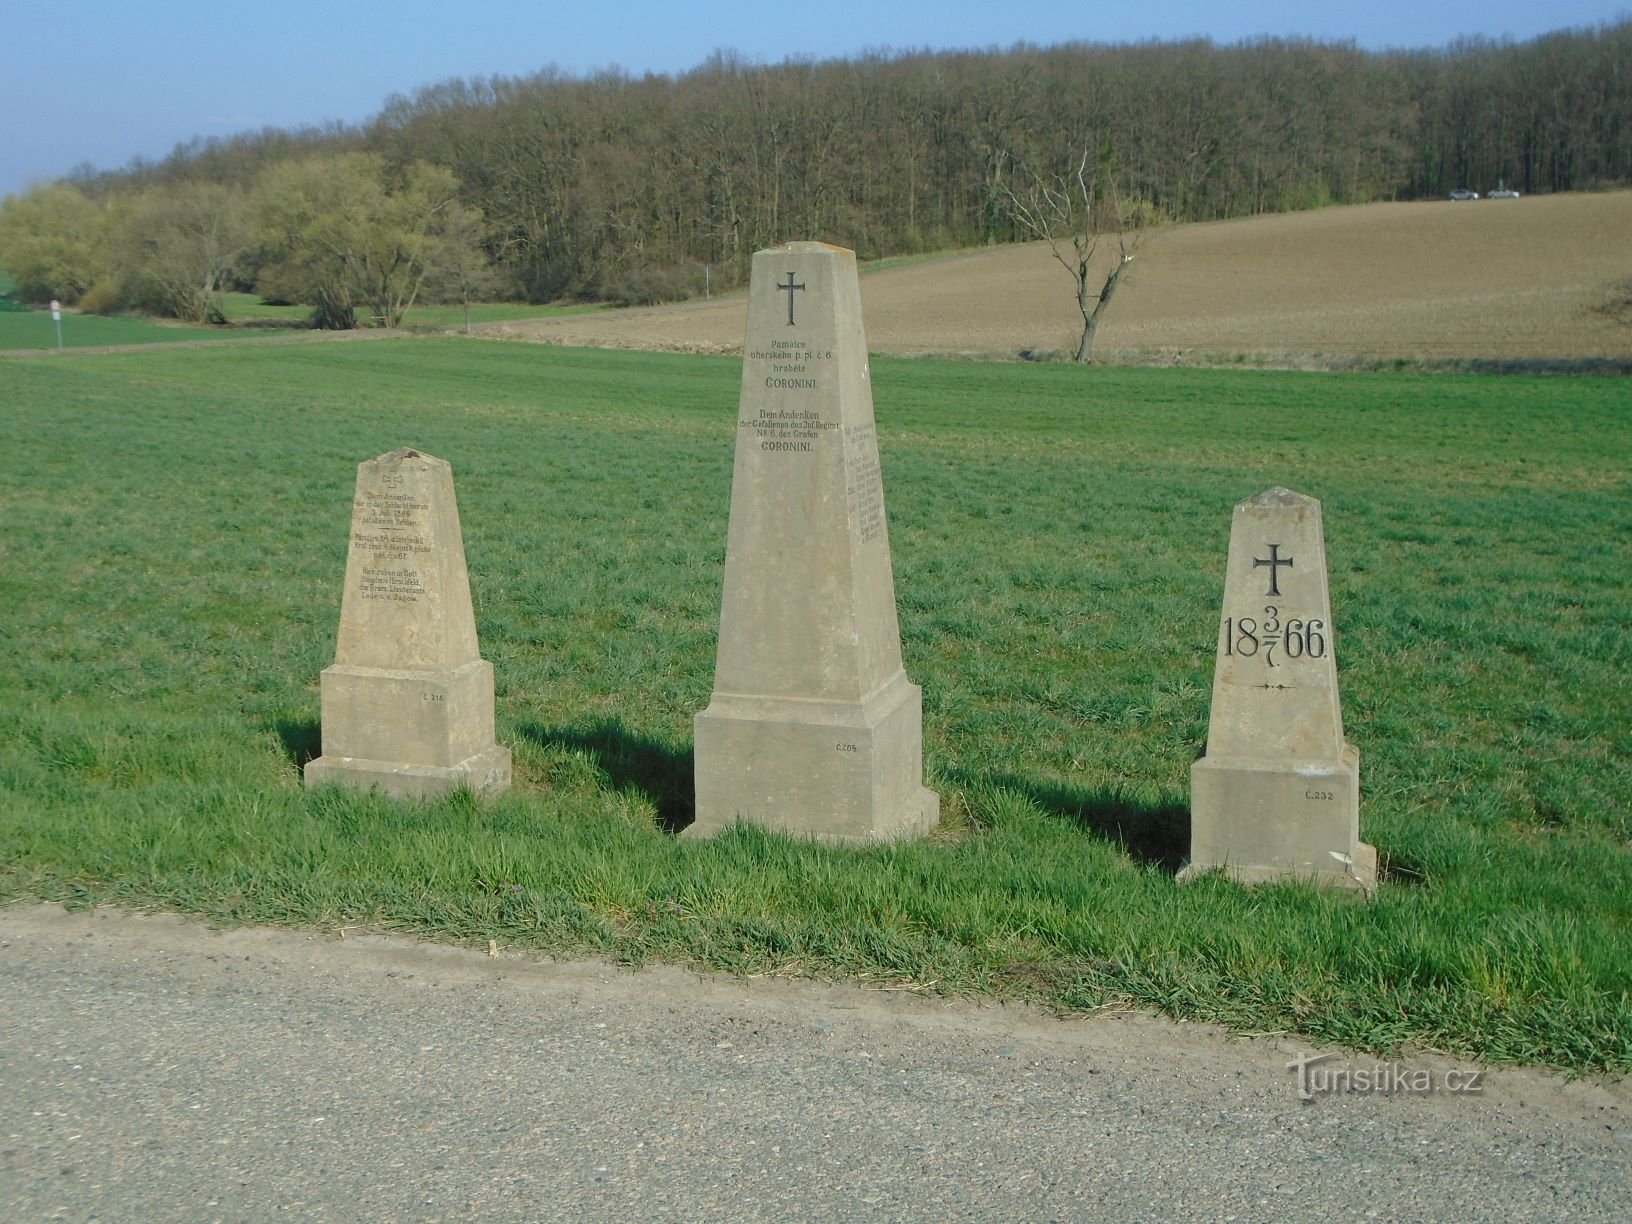 Monumenti della battaglia del 1866 lungo la strada (Čistěves, 7.4.2019/XNUMX/XNUMX)